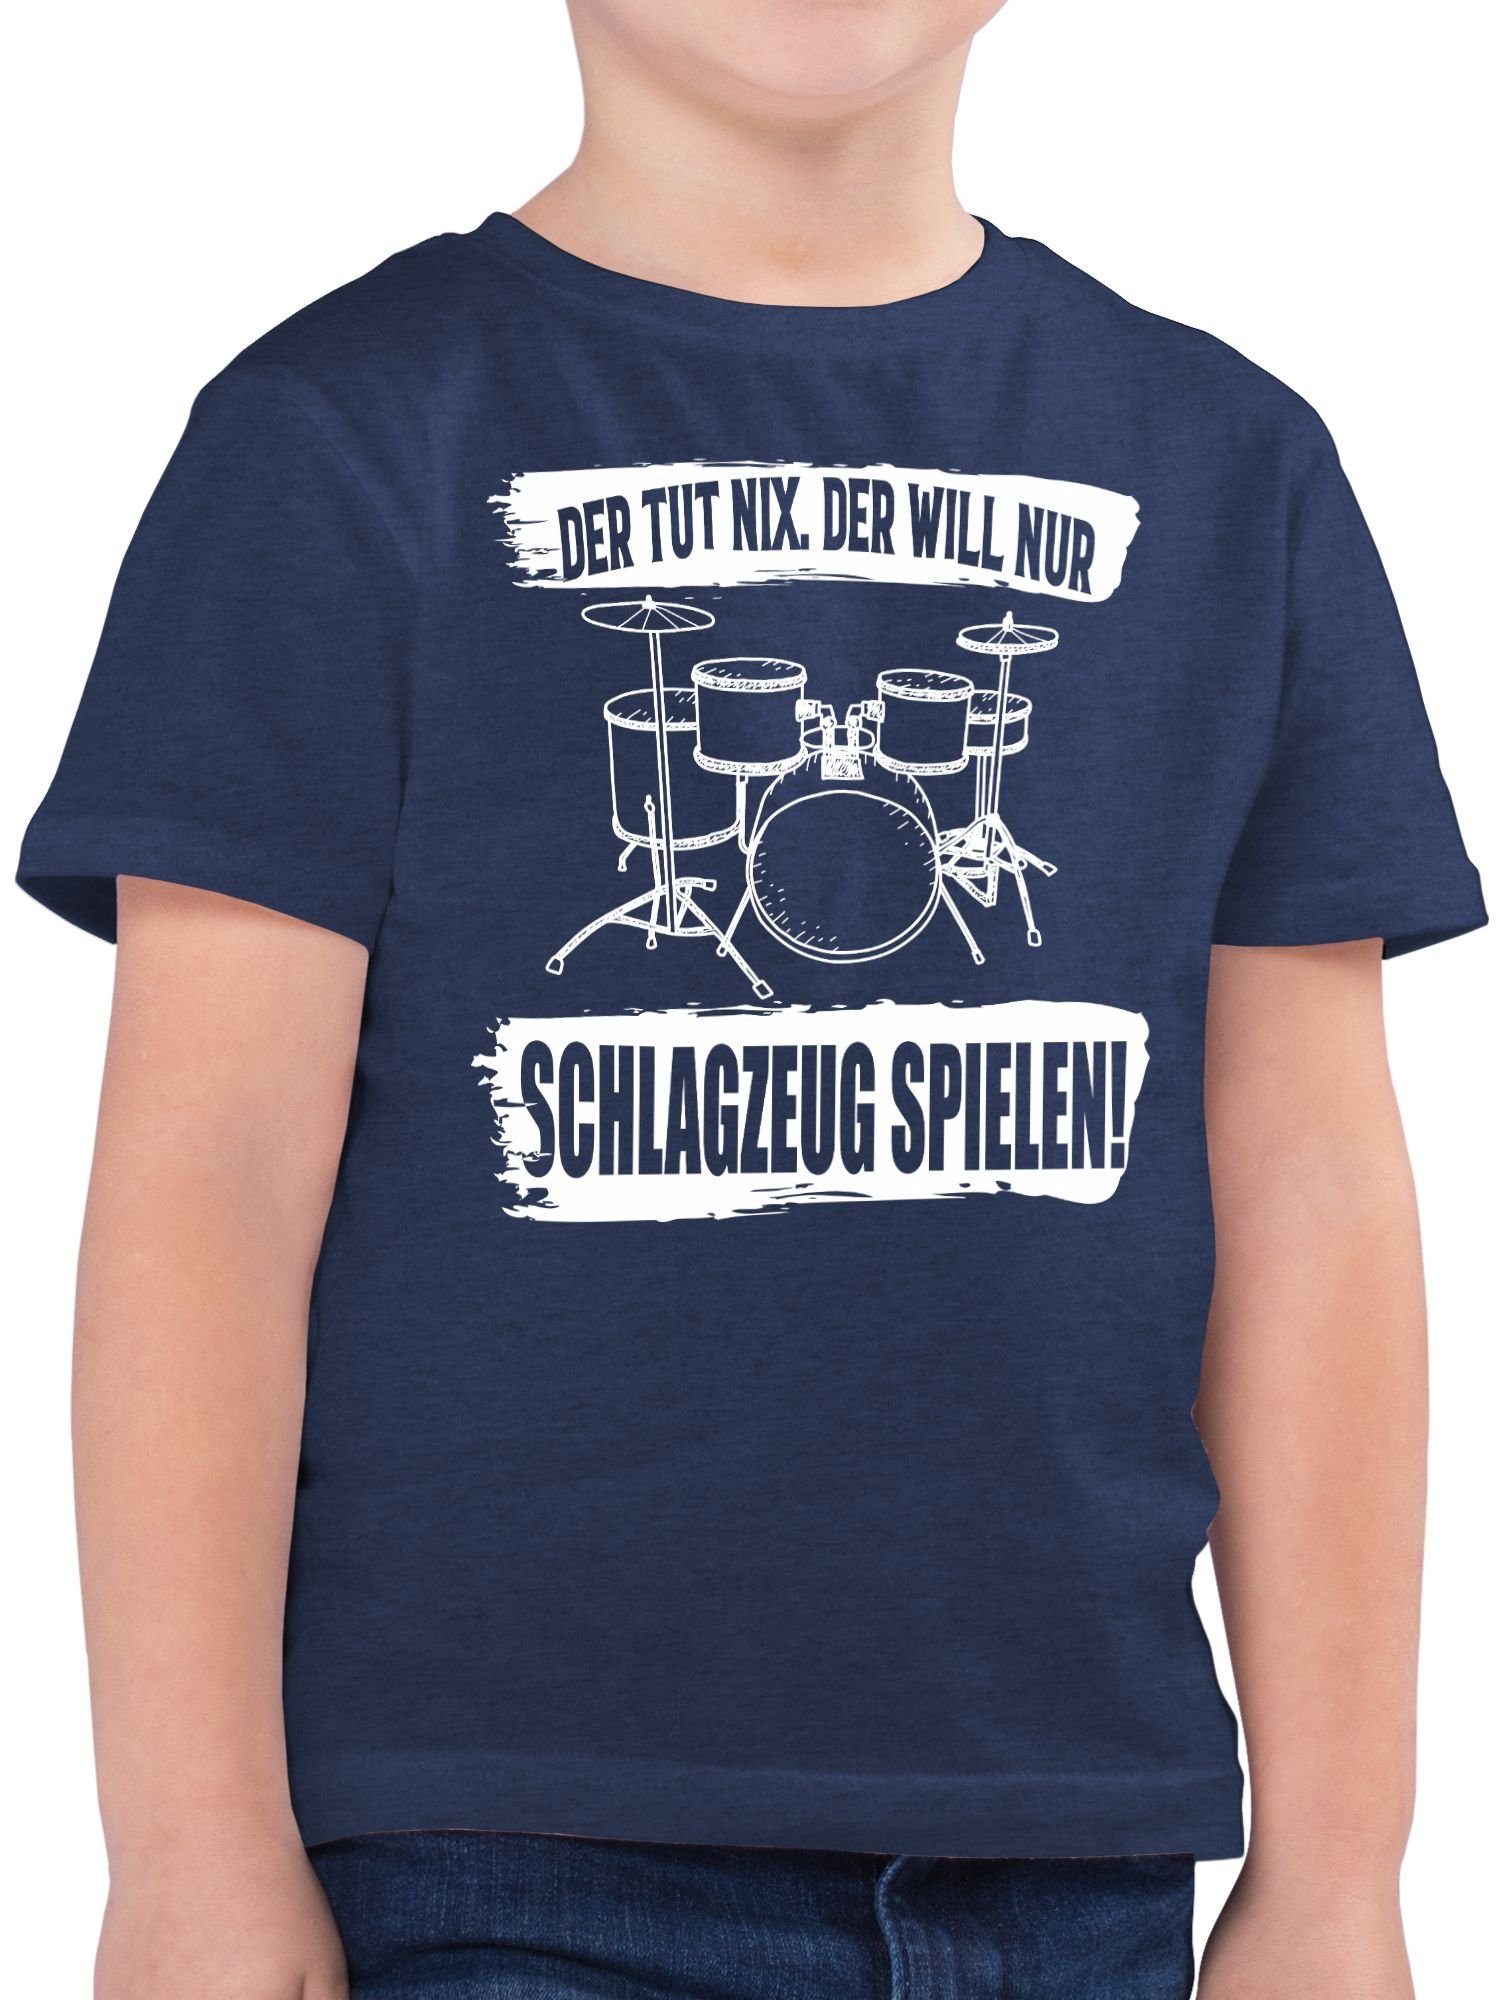 2 Meliert nur tut der Schlagzeug spielen. Der und T-Shirt Shirtracer will nix. Dunkelblau Kinderkleidung Co